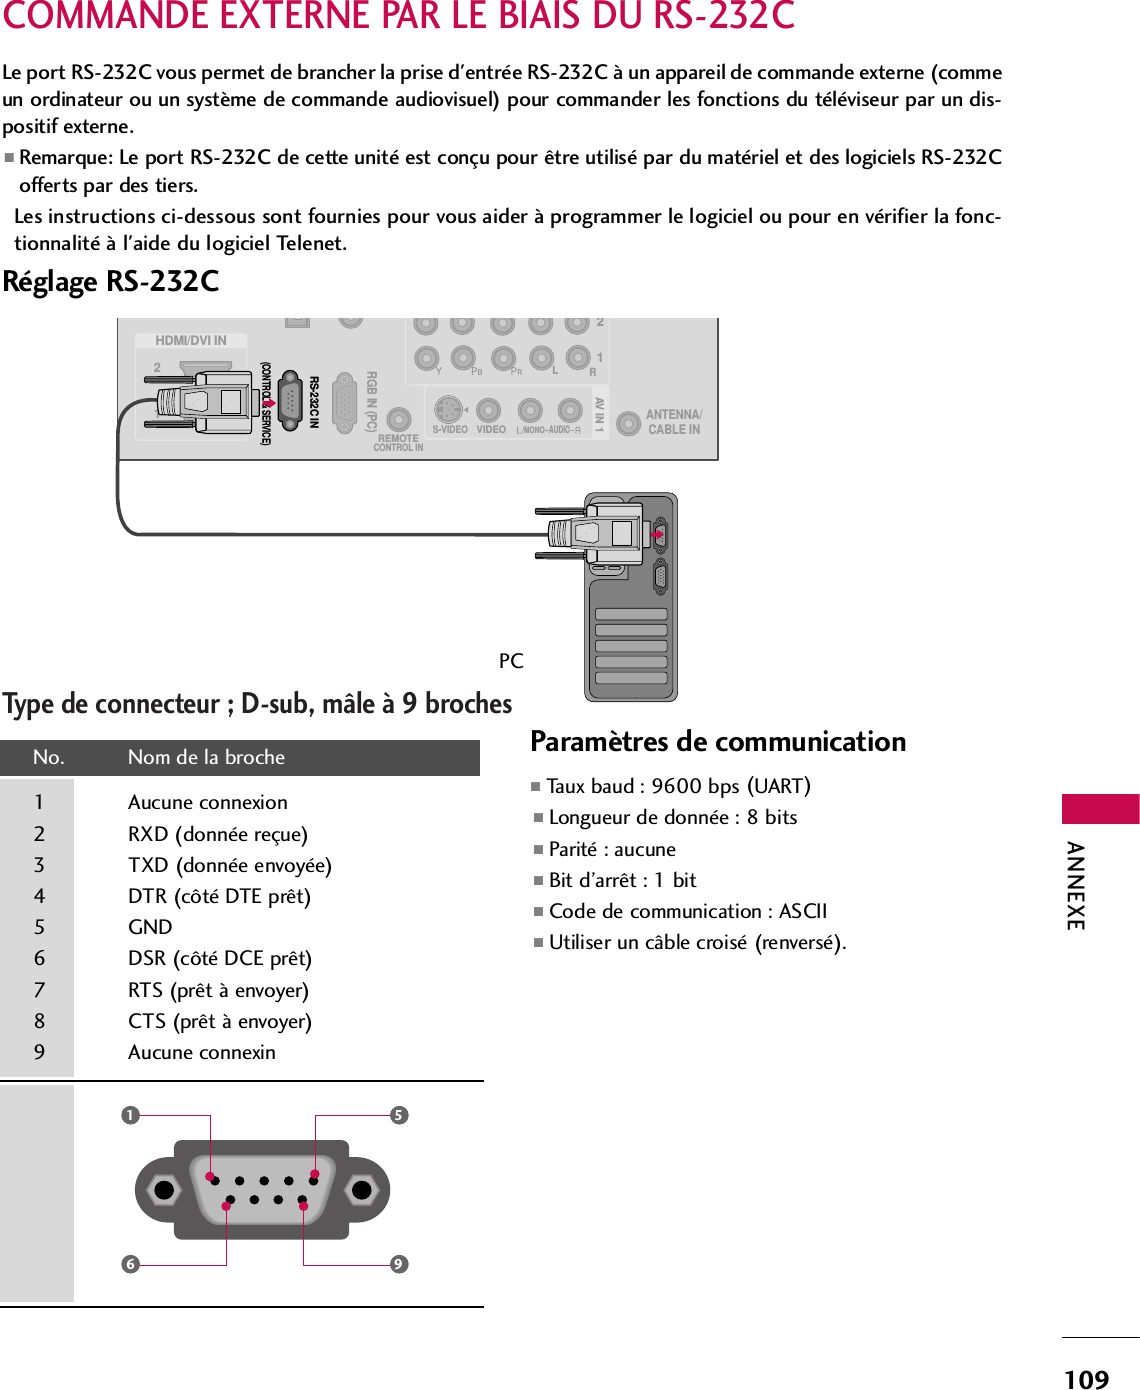 ANNEXE109COMMANDE EXTERNE PAR LE BIAIS DU RS-232CRéglage RS-232CLe port RS-232C vous permet de brancher la prise d&apos;entrée RS-232C à un appareil de commande externe (commeun ordinateur ou un système de commande audiovisuel) pour commander les fonctions du téléviseur par un dis-positif externe. ■Remarque: Le port RS-232C de cette unité est conçu pour être utilisé par du matériel et des logiciels RS-232Cofferts par des tiers. Les instructions ci-dessous sont fournies pour vous aider à programmer le logiciel ou pour en vérifier la fonc-tionnalité à l&apos;aide du logiciel Telenet. 12LRRGB IN (PC)REMOTECONTROL INAUDIOVIDEOS-VIDEO/MONOAV IN 1HDMI/DVI IN 21ANTENNA/CABLE INRS-232C IN(CONTROL &amp; SERVICE)Type de connecteur ; D-sub, mâle à 9 brochesNo.  Nom de la broche1 Aucune connexion2 RXD (donnée reçue)3 TXD (donnée envoyée)4 DTR (côté DTE prêt)5 GND6 DSR (côté DCE prêt)7 RTS (prêt à envoyer)8 CTS (prêt à envoyer)9 Aucune connexin1659PCParamètres de communication ■Taux baud : 9600 bps (UART)■Longueur de donnée : 8 bits■Parité : aucune■Bit d’arrêt : 1 bit■Code de communication : ASCII■Utiliser un câble croisé (renversé).